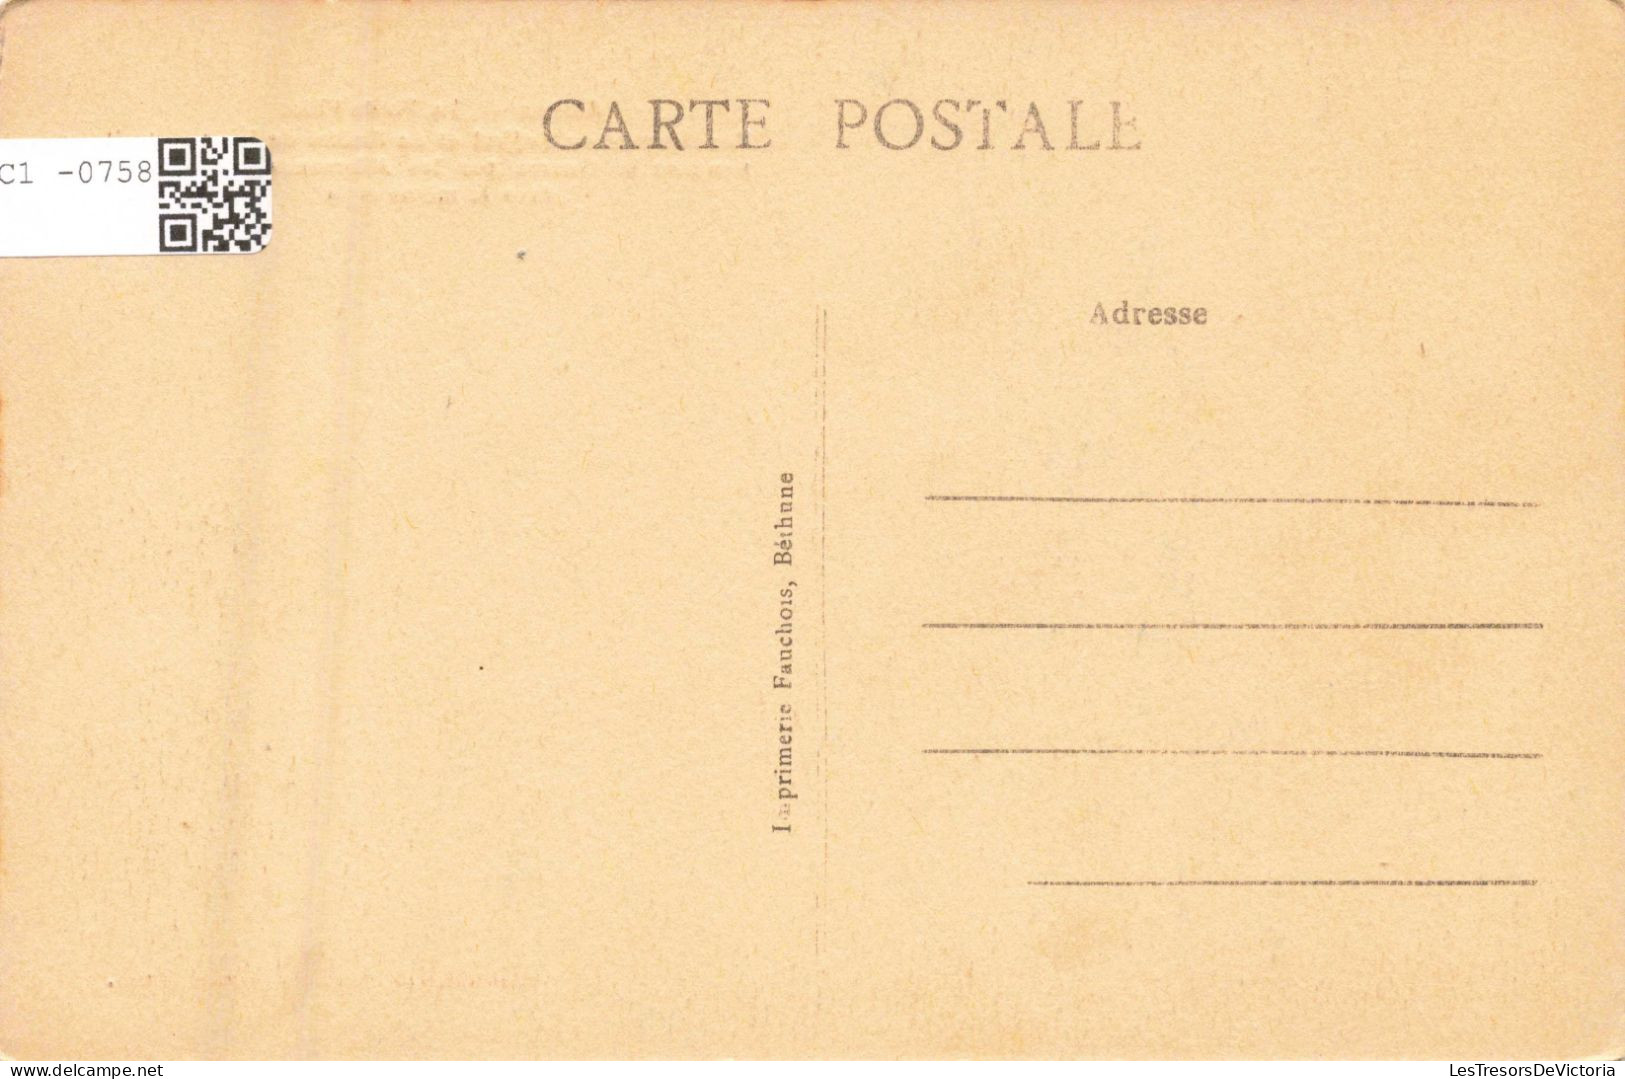 FRANCE - 62 - Arras - La Petite Place - Renaissance Du Beffroi Et De L'Hôtel De Ville Détruit.. - Carte Postale Ancienne - Arras